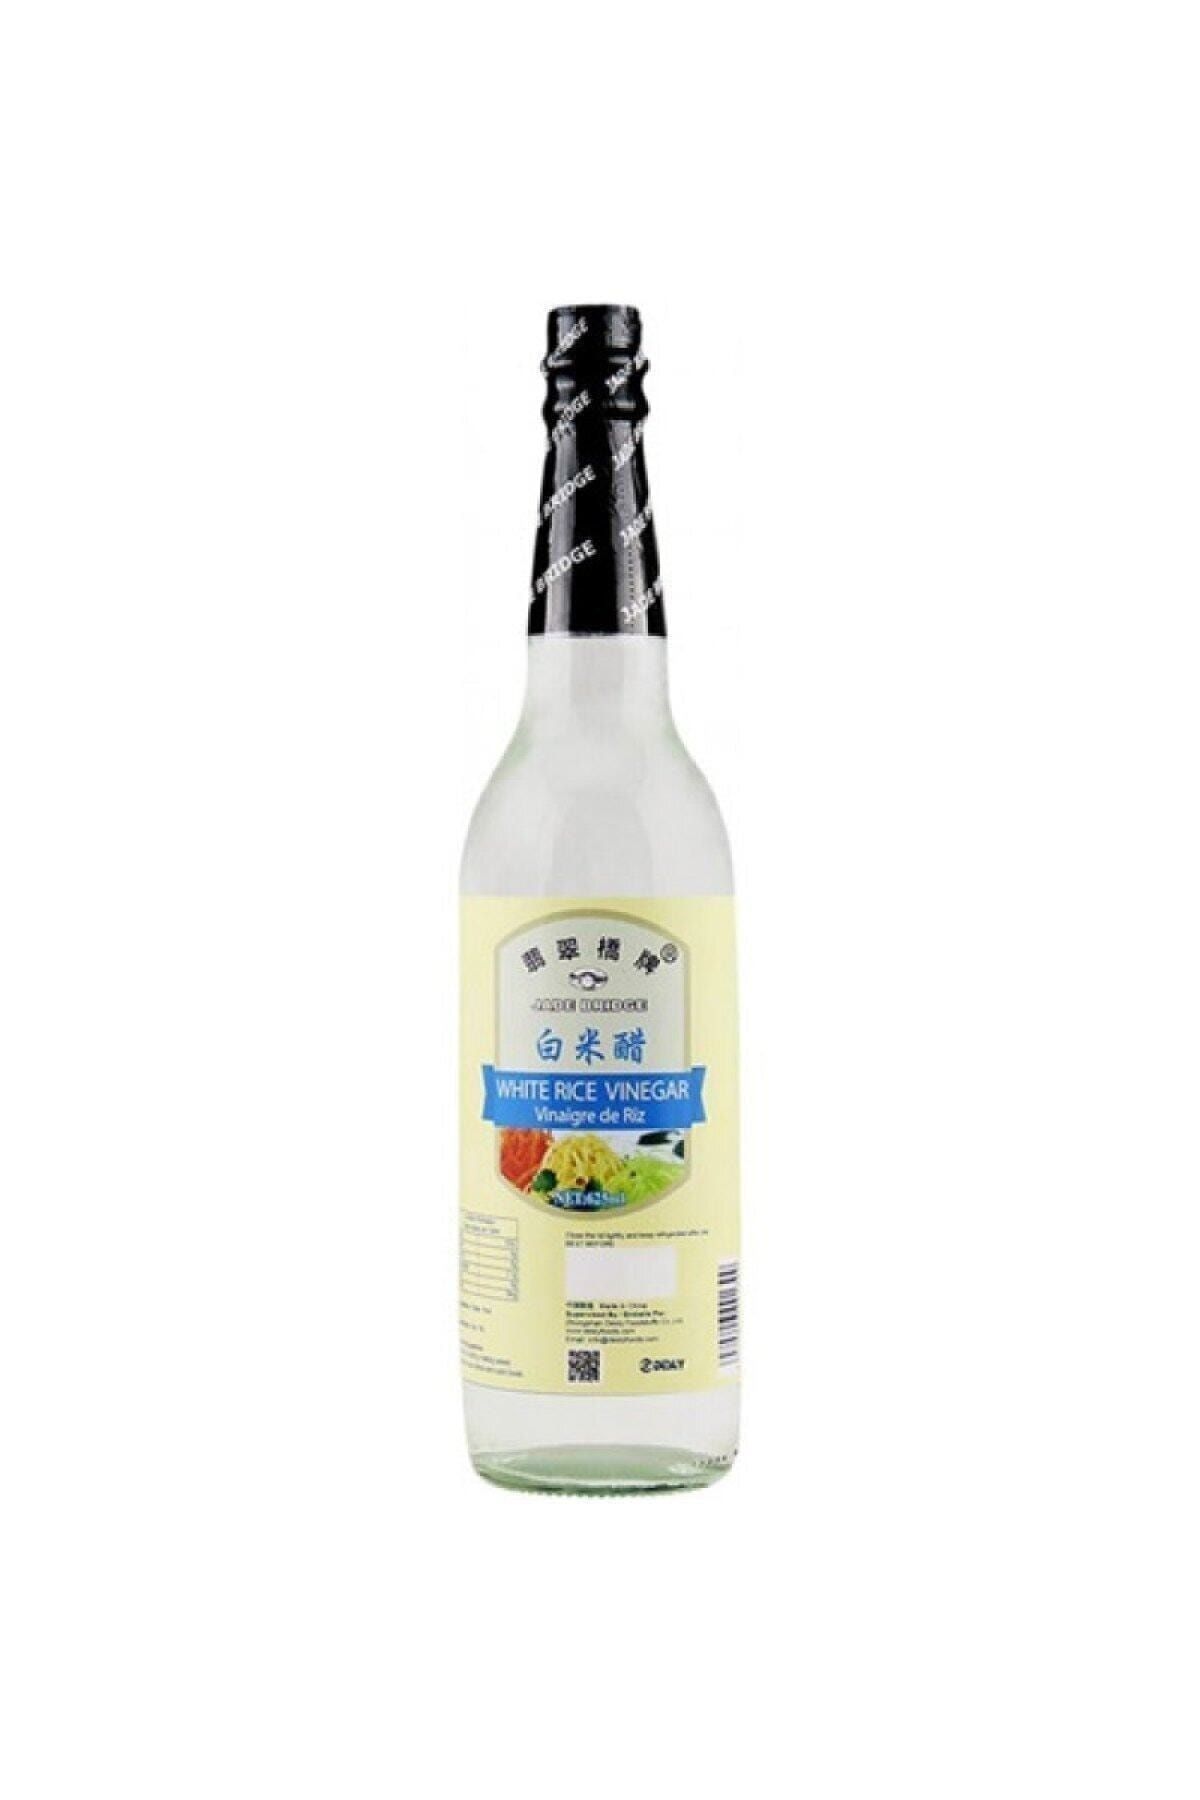 JADE Bridge Pirinç Sirkesi 625 ml White Rice Vinegar Son Tüketim Tarihi Expiry Date: 22/07/2024